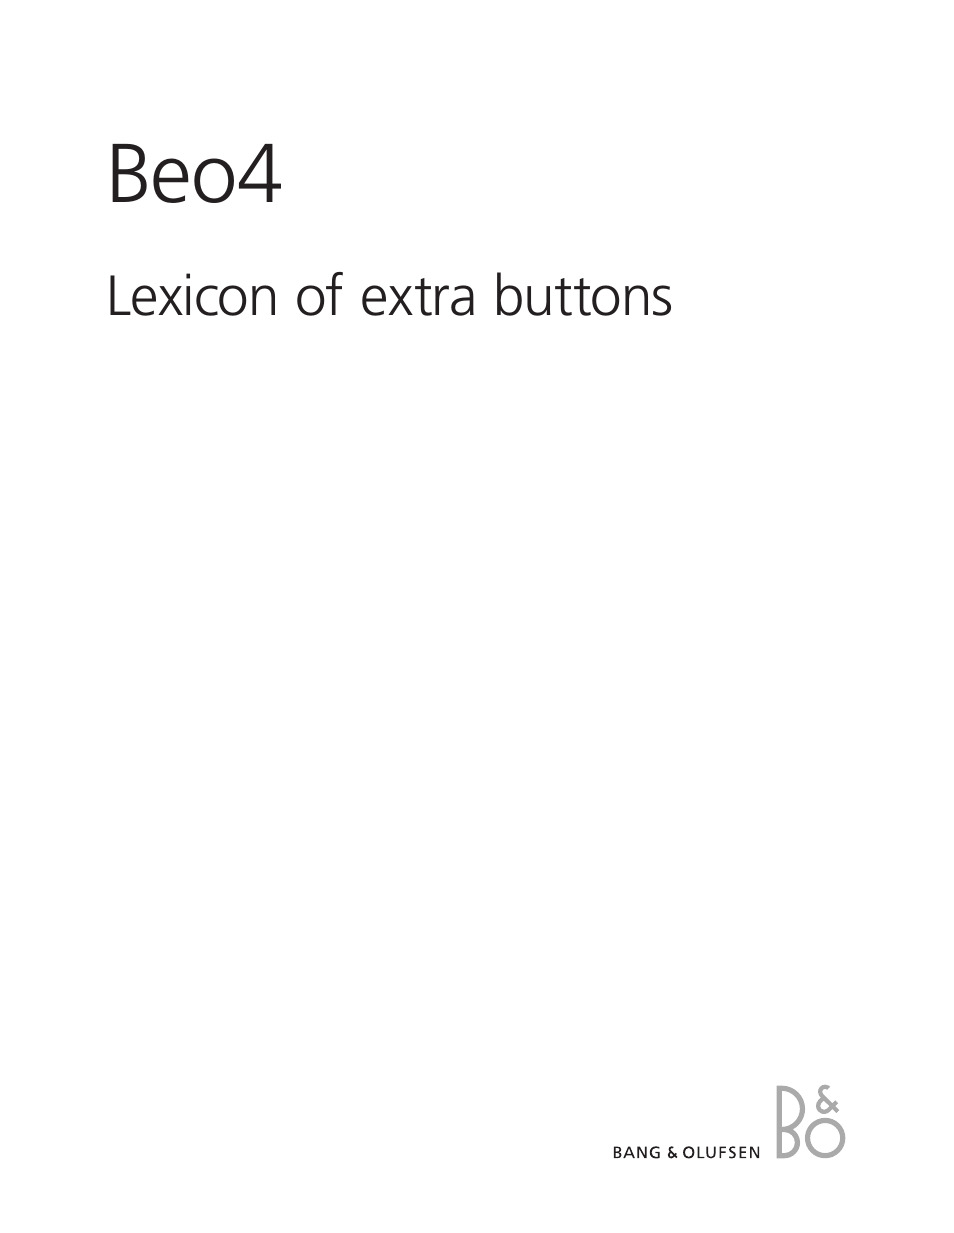 Beo4 (w/o navigation button) - Lexicon